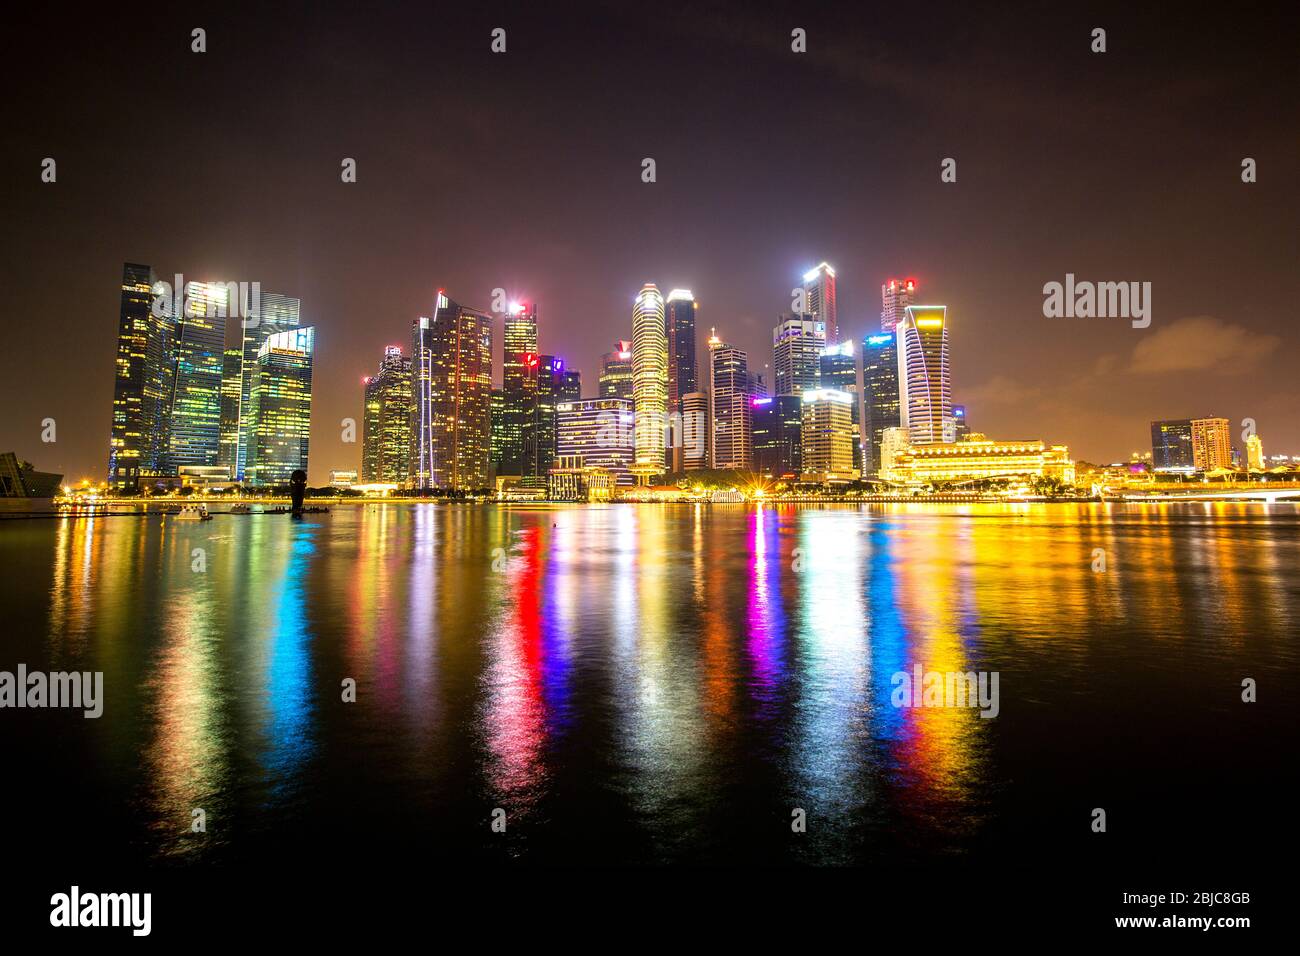 Singapur, Asien, Singapur, Singapur, Singapur Stock Fotografie, Singapur Straße, singapura, Singapur Urlaub, Reisen Singapur Stockfoto